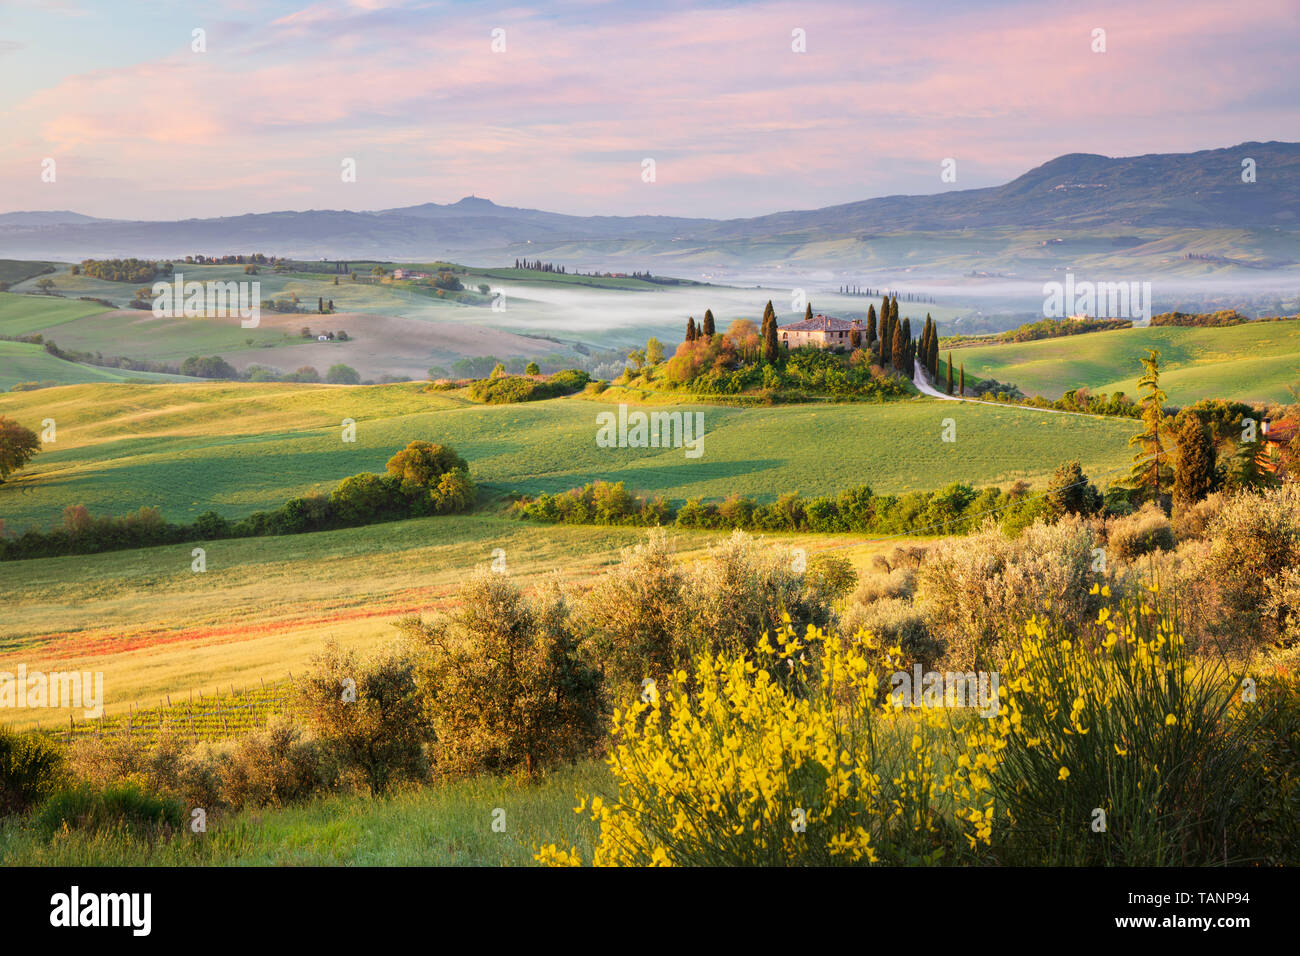 Ver más misty mañana paisaje toscano con caserío tradicional y cipreses, San Quirico d'Orcia, provincia de Siena, Toscana, Italia, Europa Foto de stock